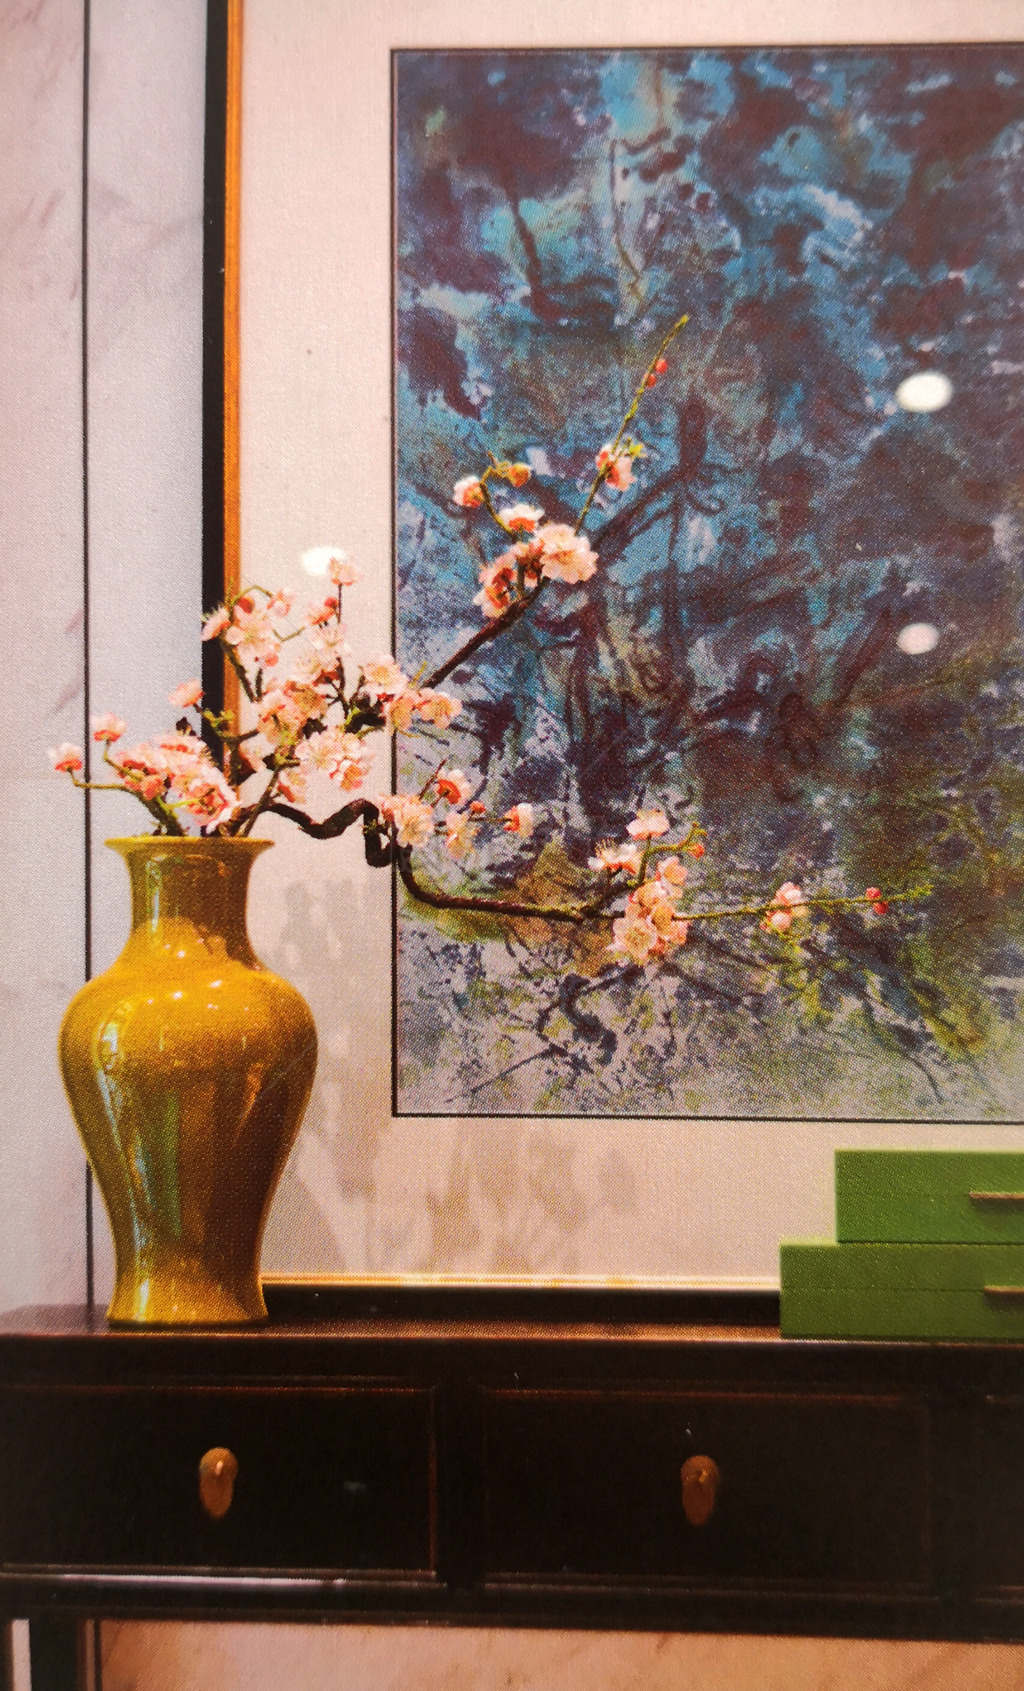 传统中式  室内家居照片 配图小图插头底图背景图  国风花瓶和挂画